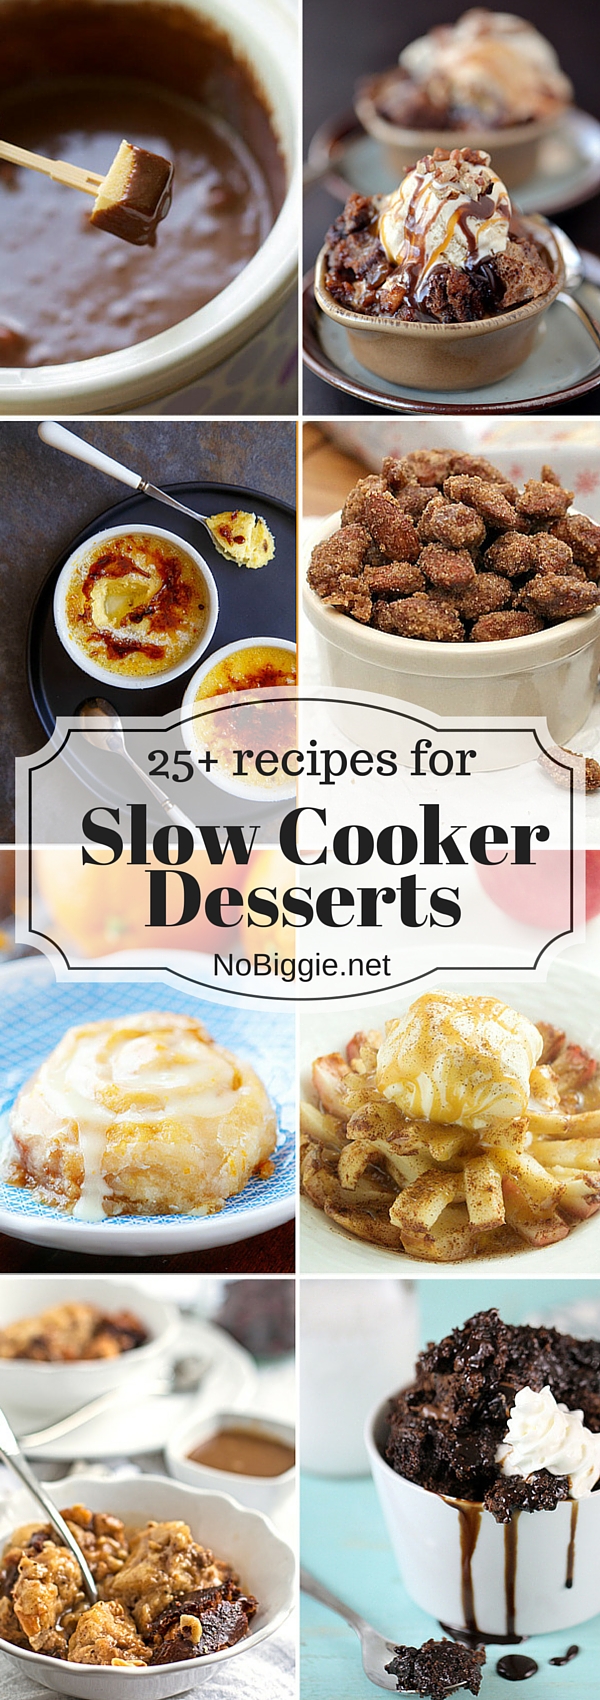 25+ Slow Cooker Dessert Recipes | NoBiggie.net